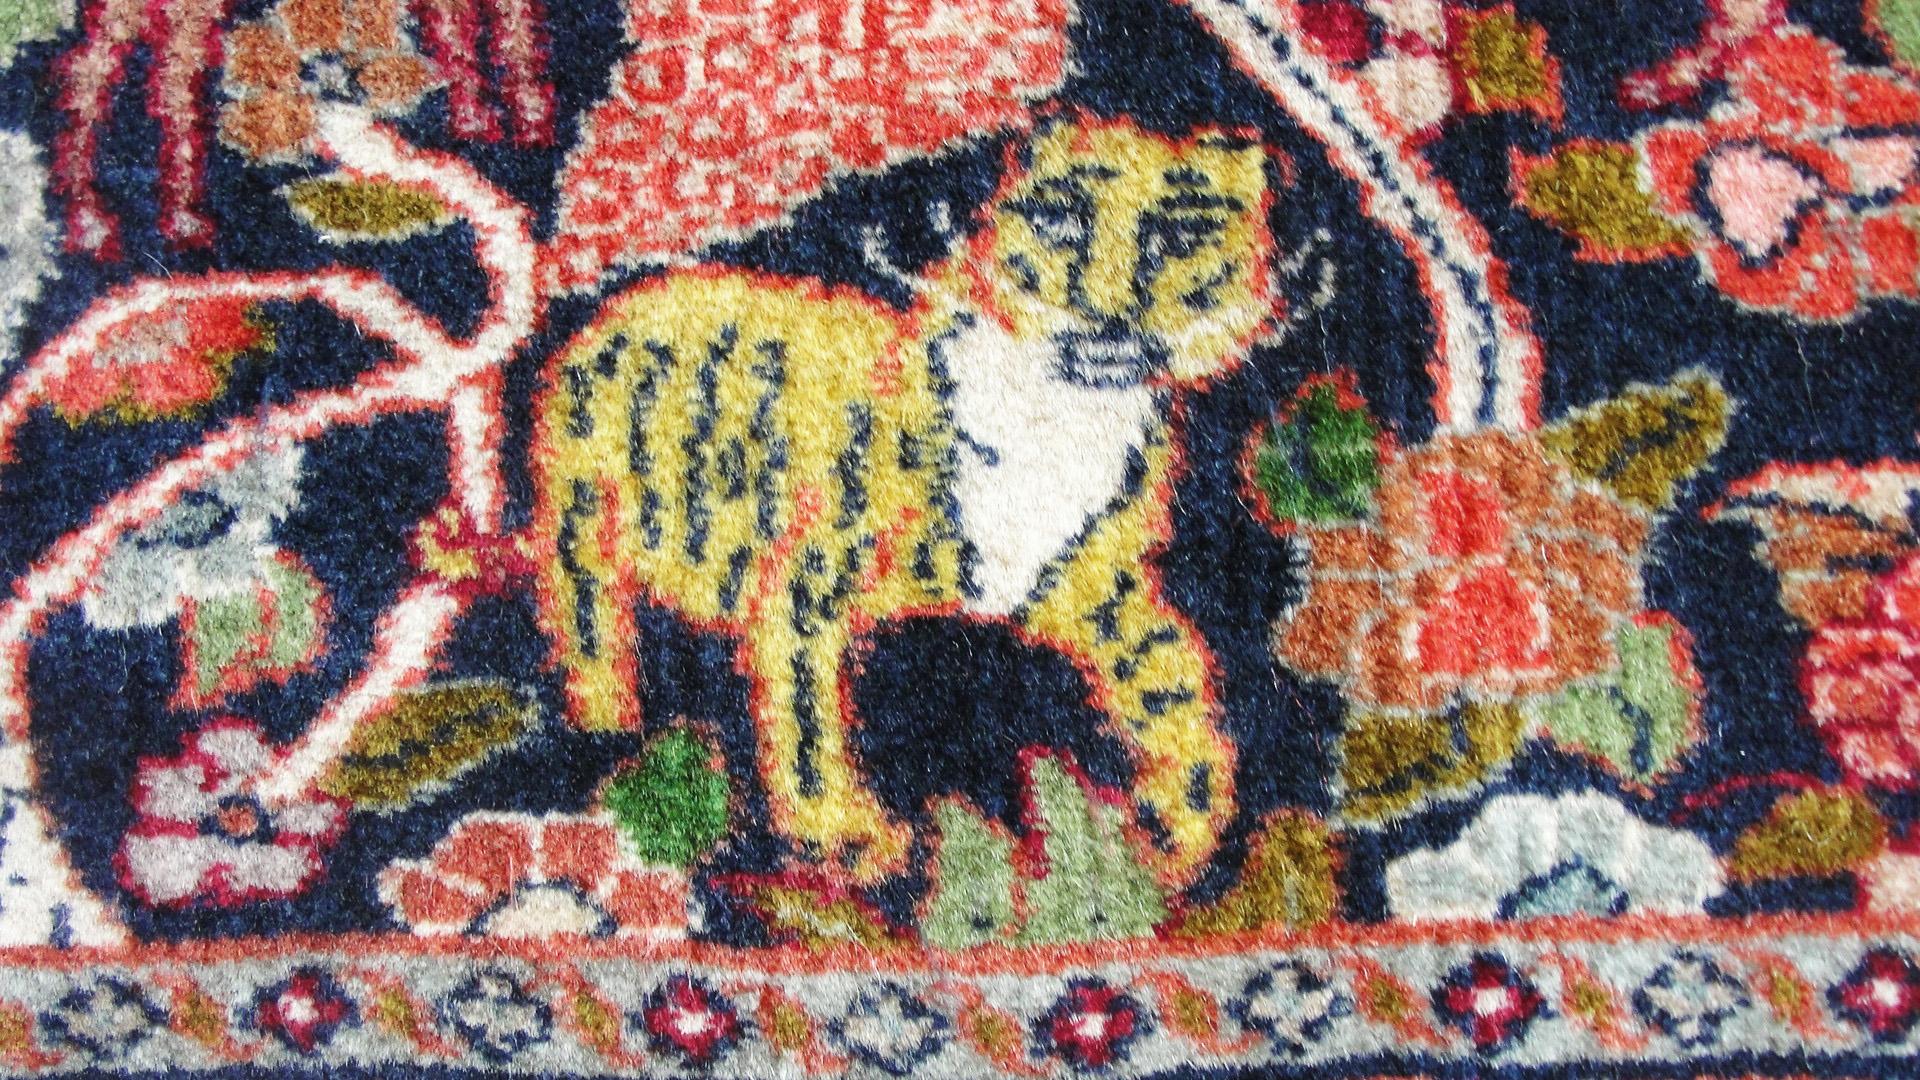 lion rug for sale